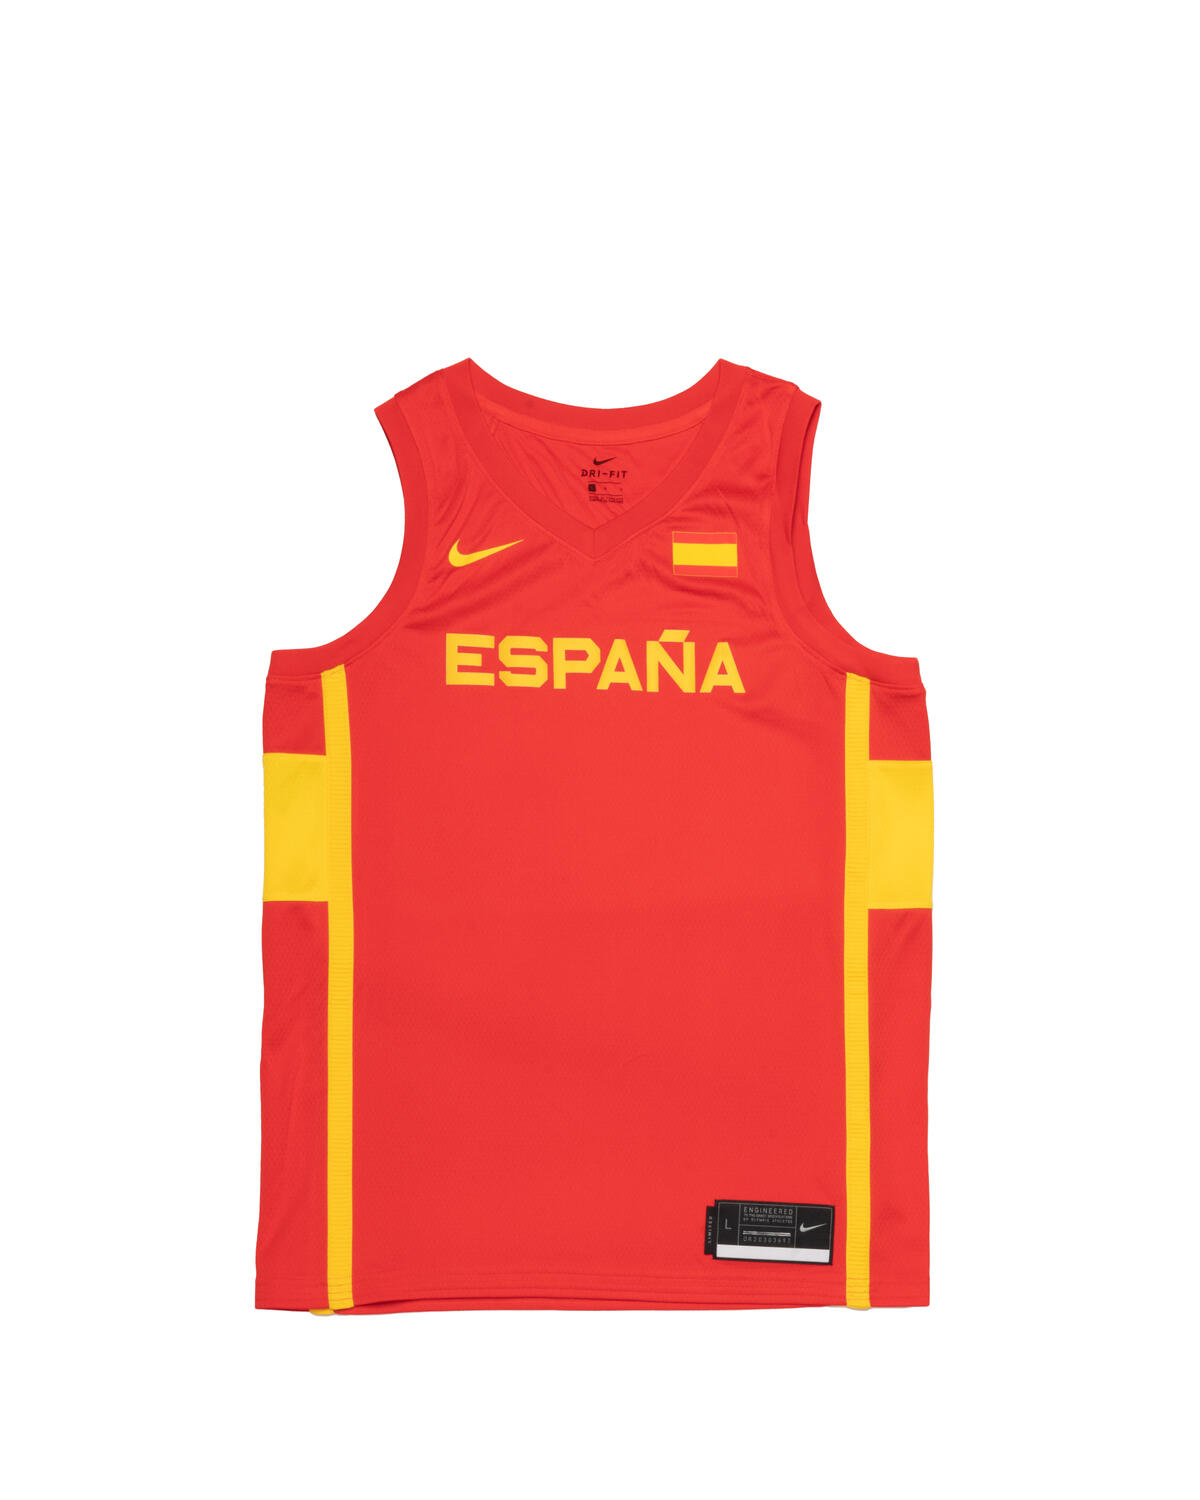 viudo Pakistán Apéndice Nike Spain Basketball Jersey | CQ0091-600 | AFEW STORE